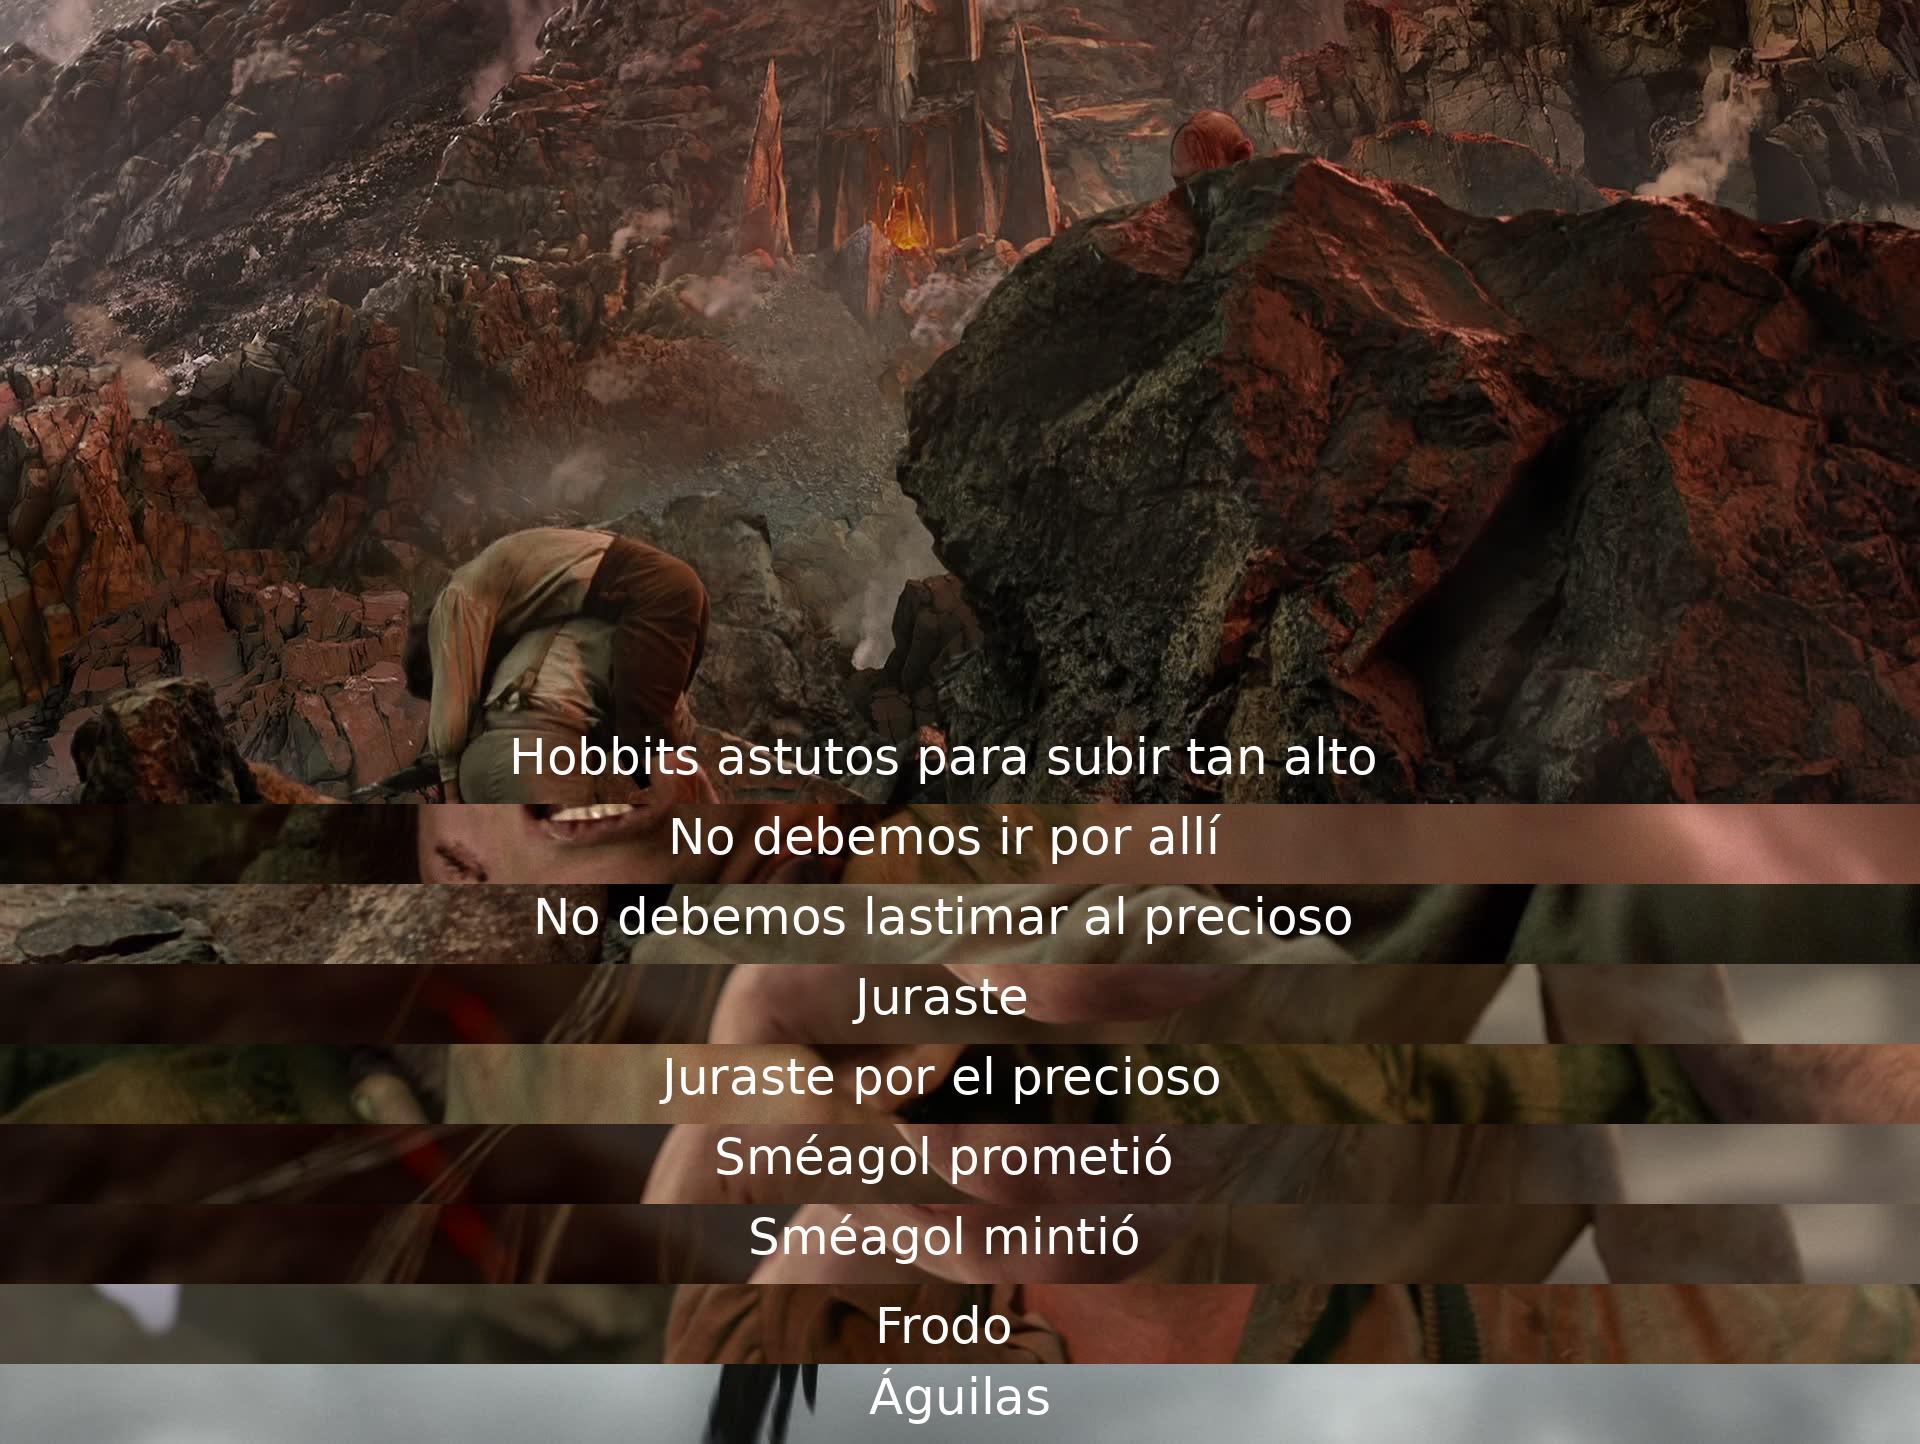 Hobbits suben alto, dudan en lastimar al precioso anillo. Sméagol promete pero miente. Frodo y las águilas.